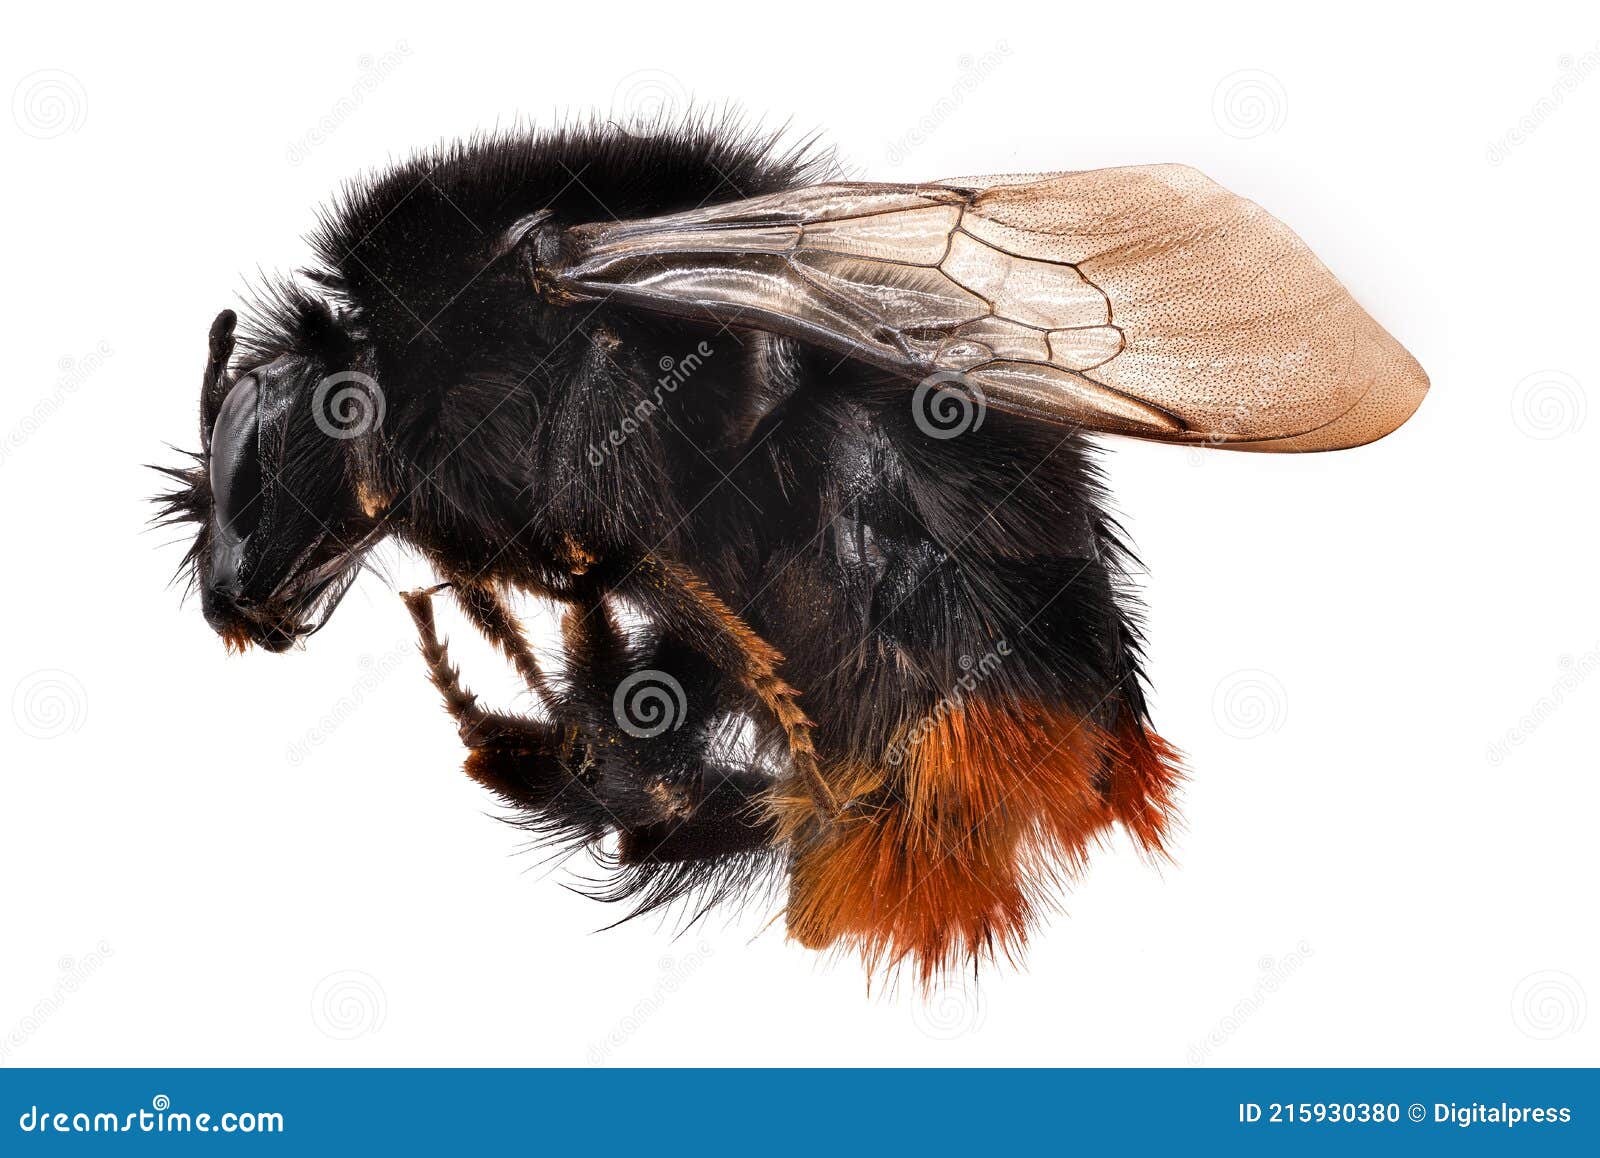 bumblebee macrophotography